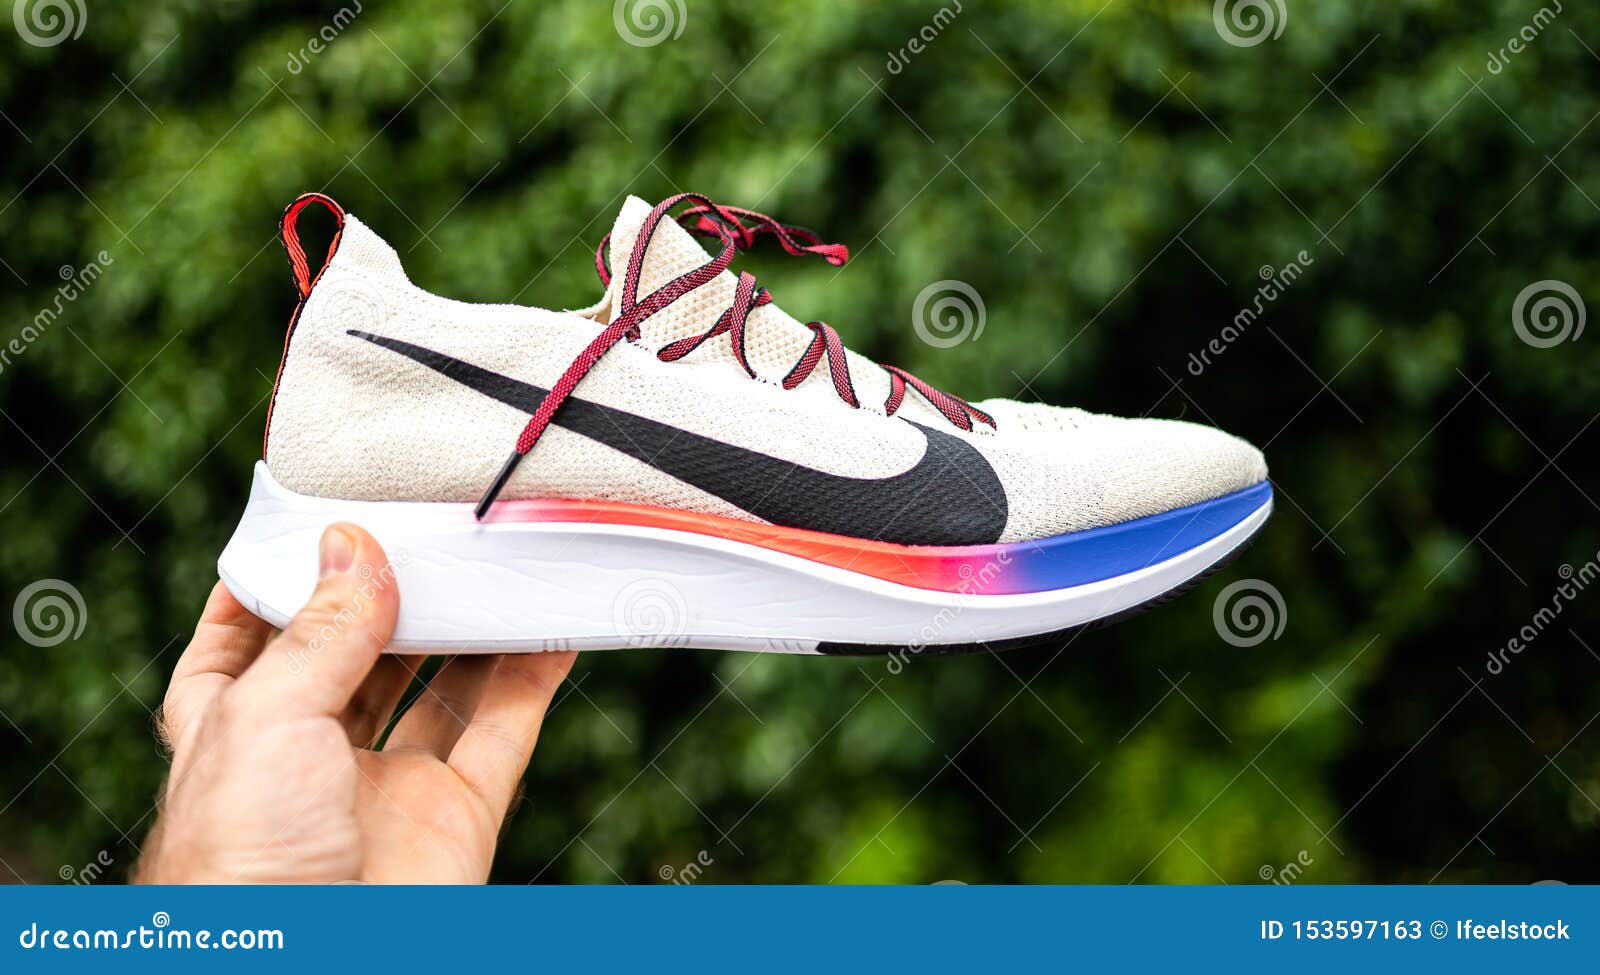 Nike Zoom Fly Flyknit Sur Le Fond Vert Photo stock éditorial - Image du  équipé, insignes: 153597163